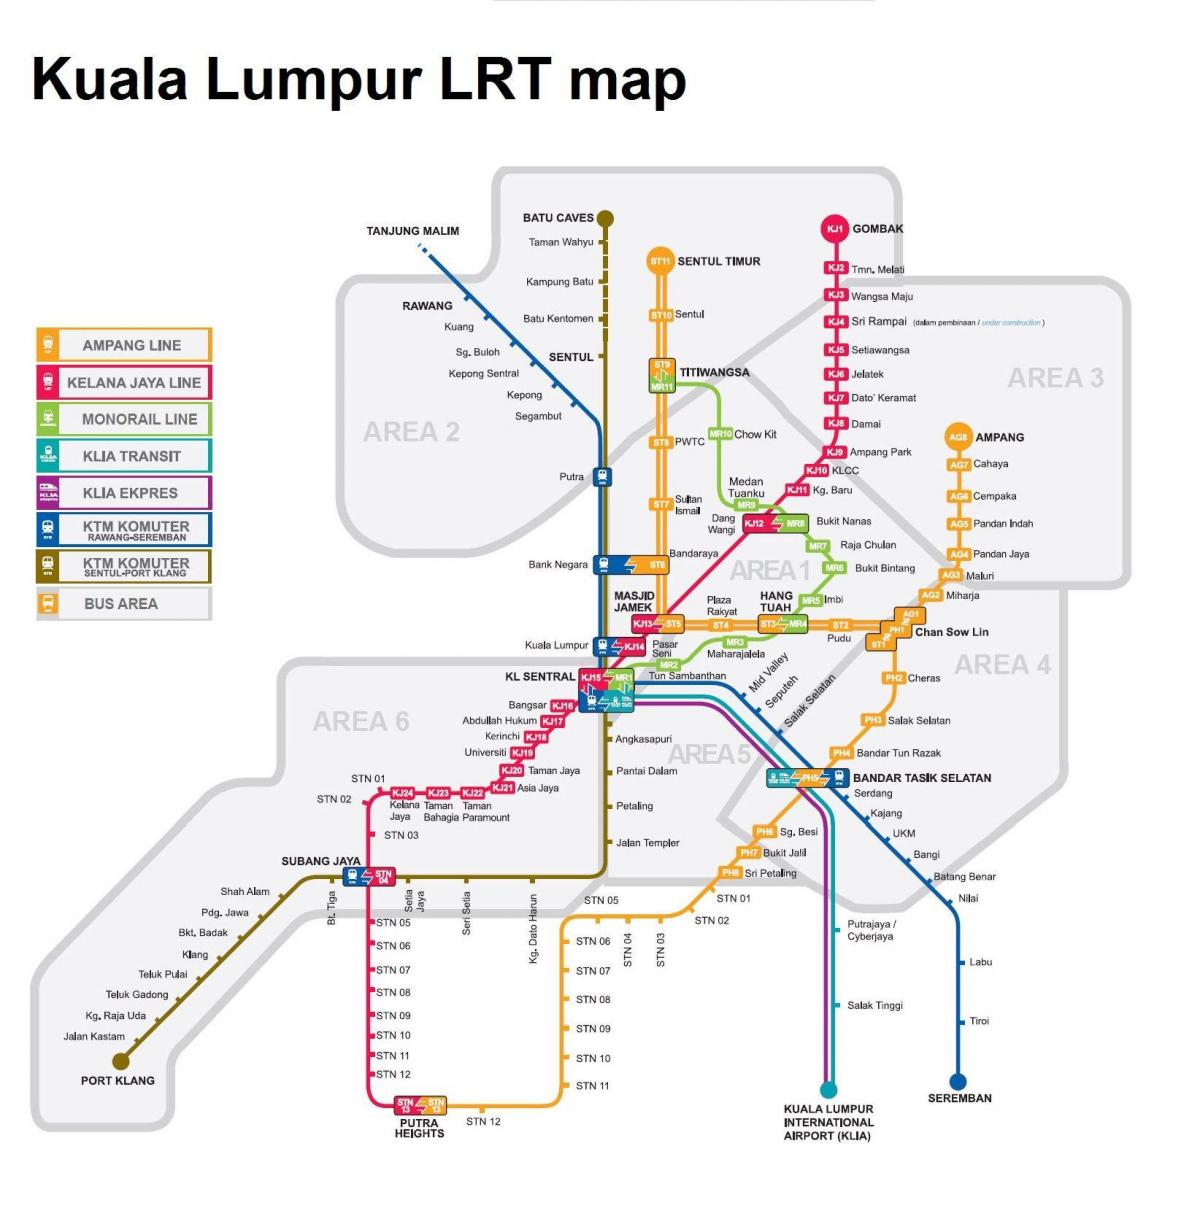 воз карта на куала лумпур